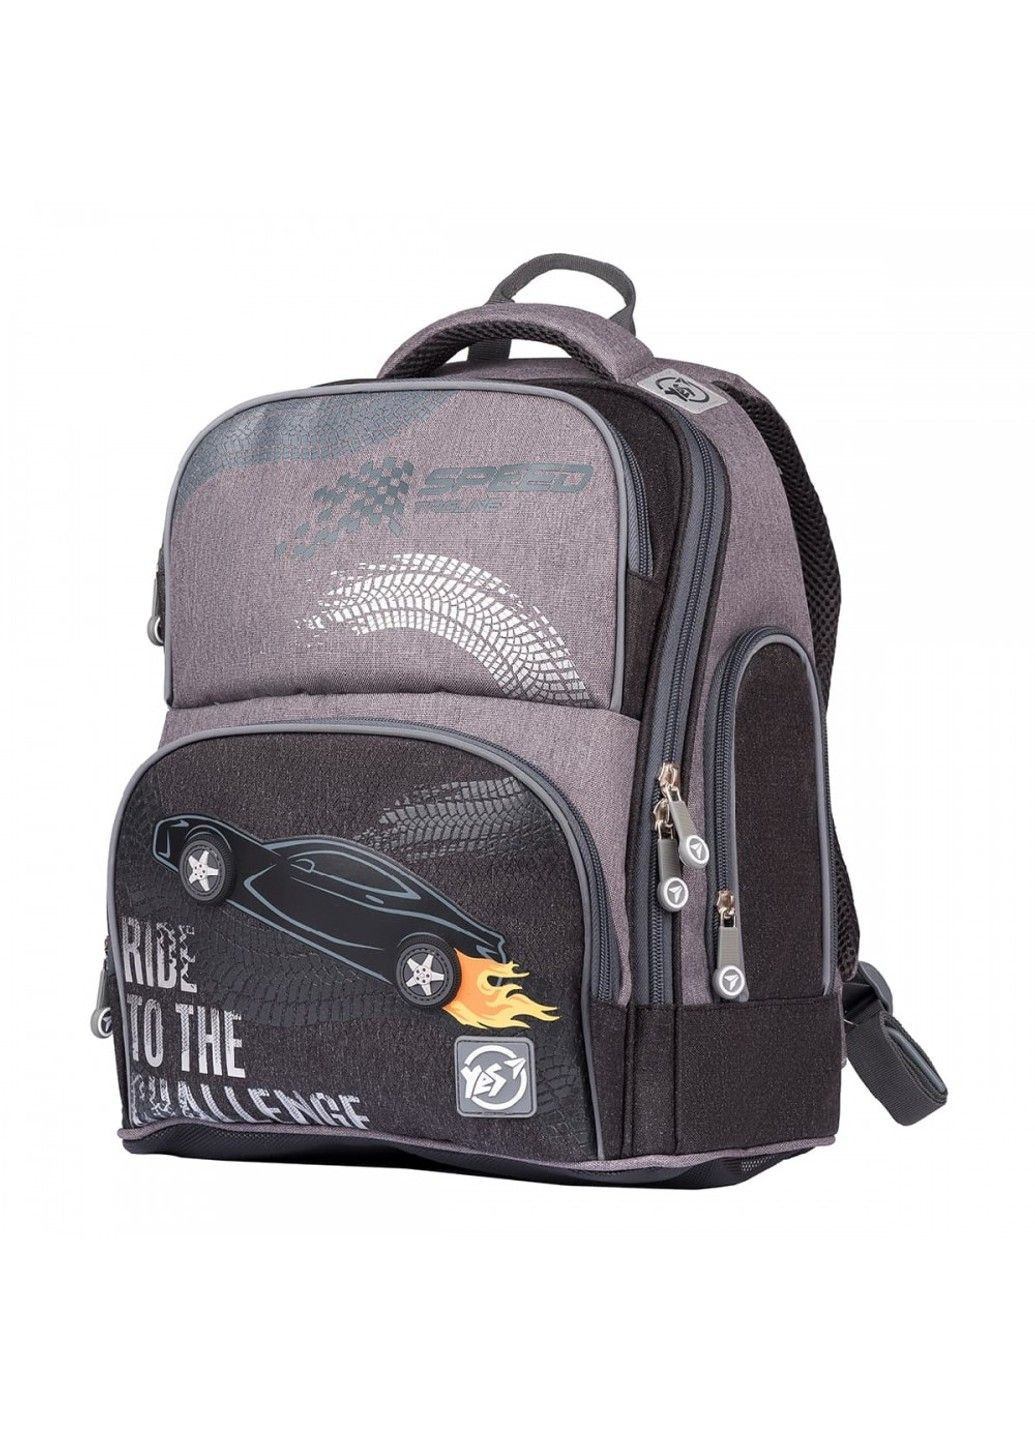 Шкільний рюкзак для молодших класів S-30 Juno Max Ride to the challenge Yes (278404506)